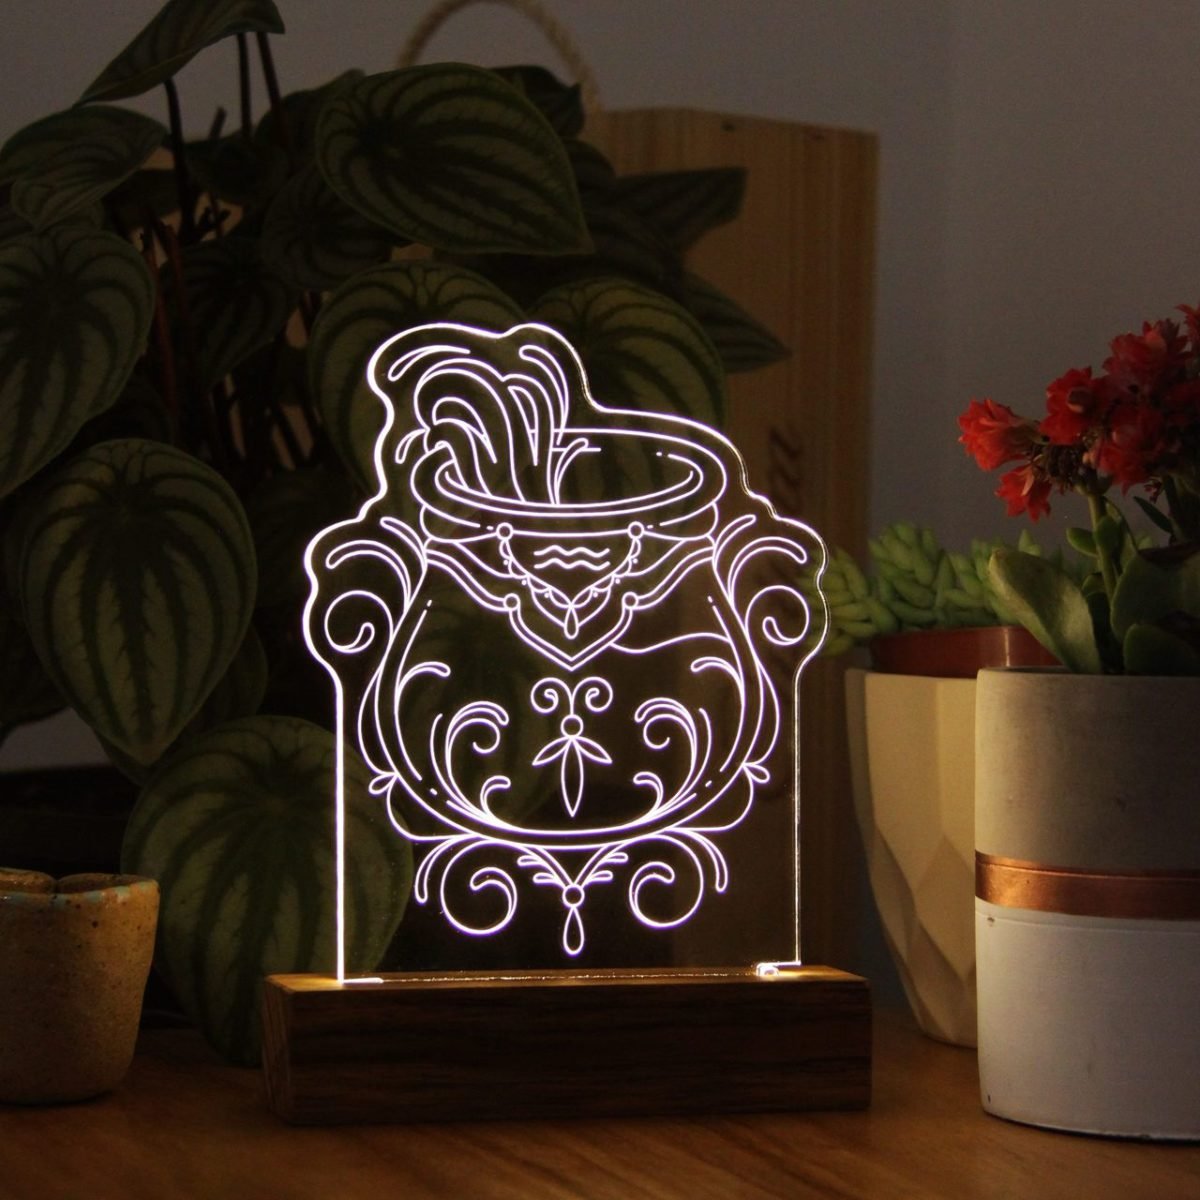 luminária acesa com o símbolo do signo de aquário